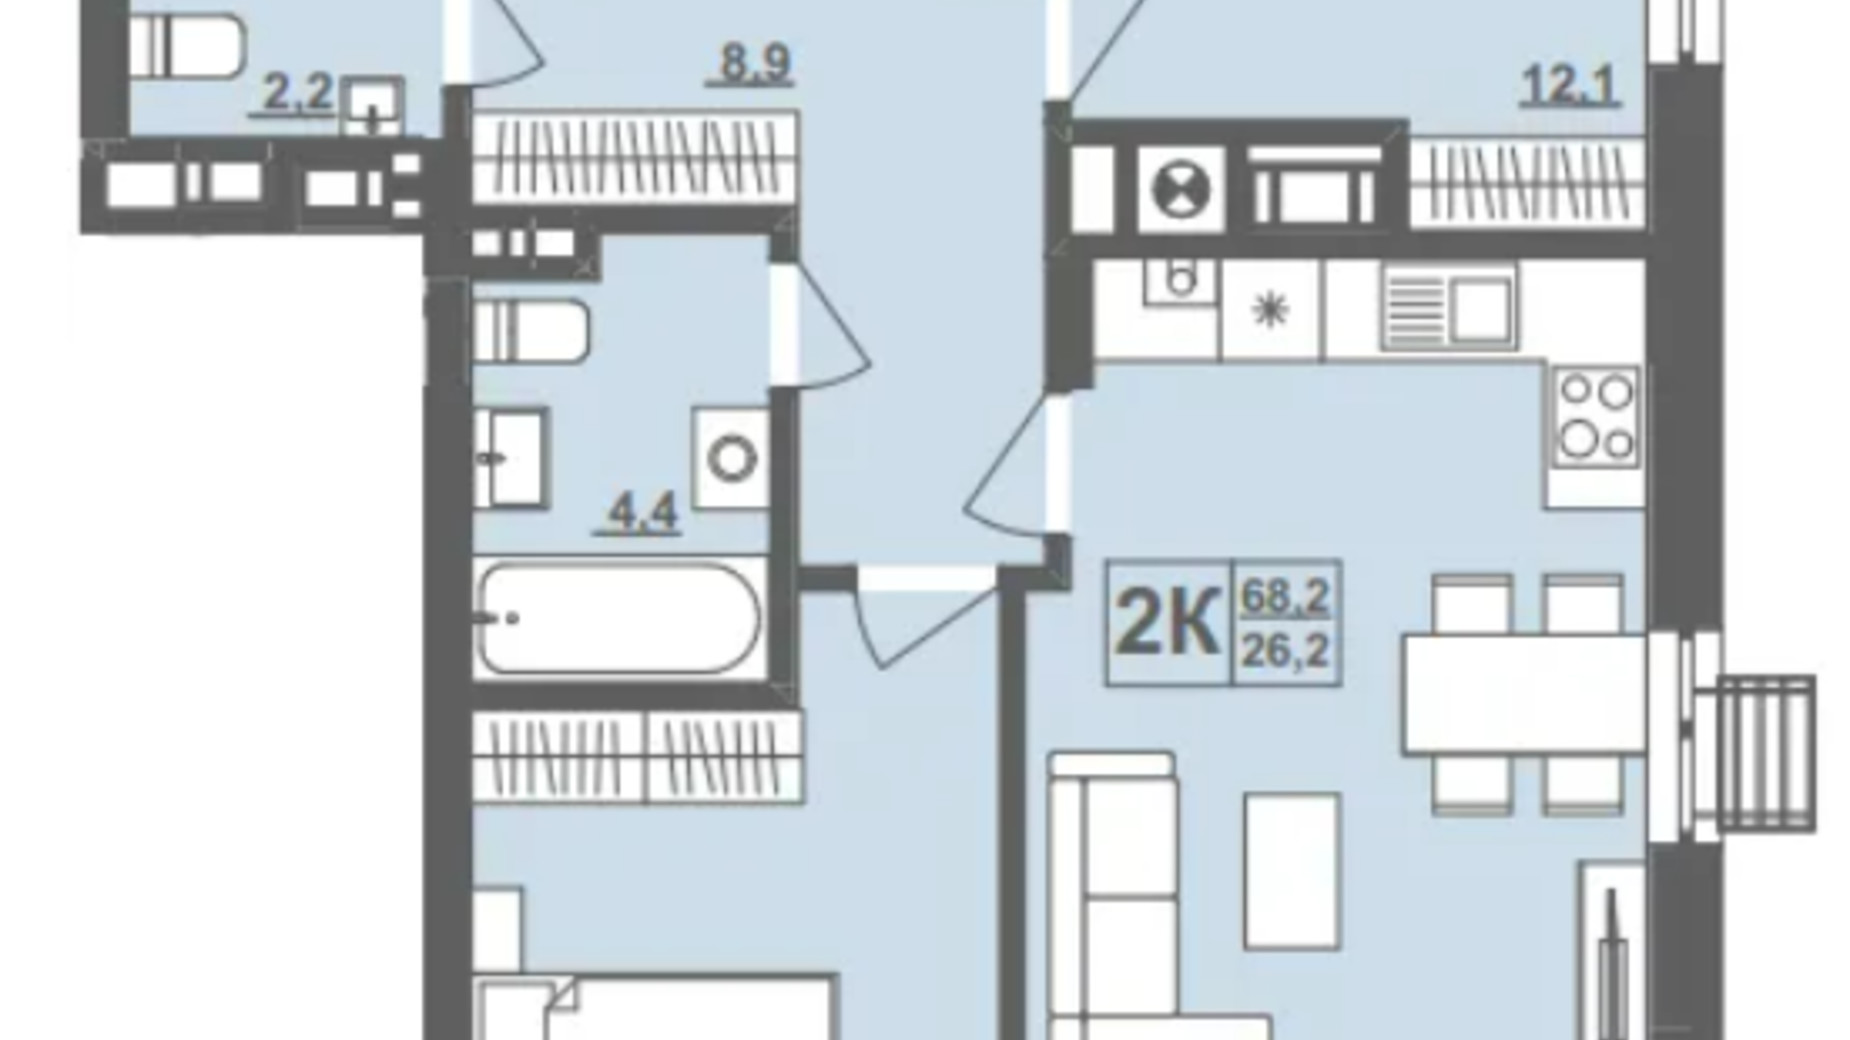 Планировка 2-комнатной квартиры в ЖК Грушевский 68.2 м², фото 572487